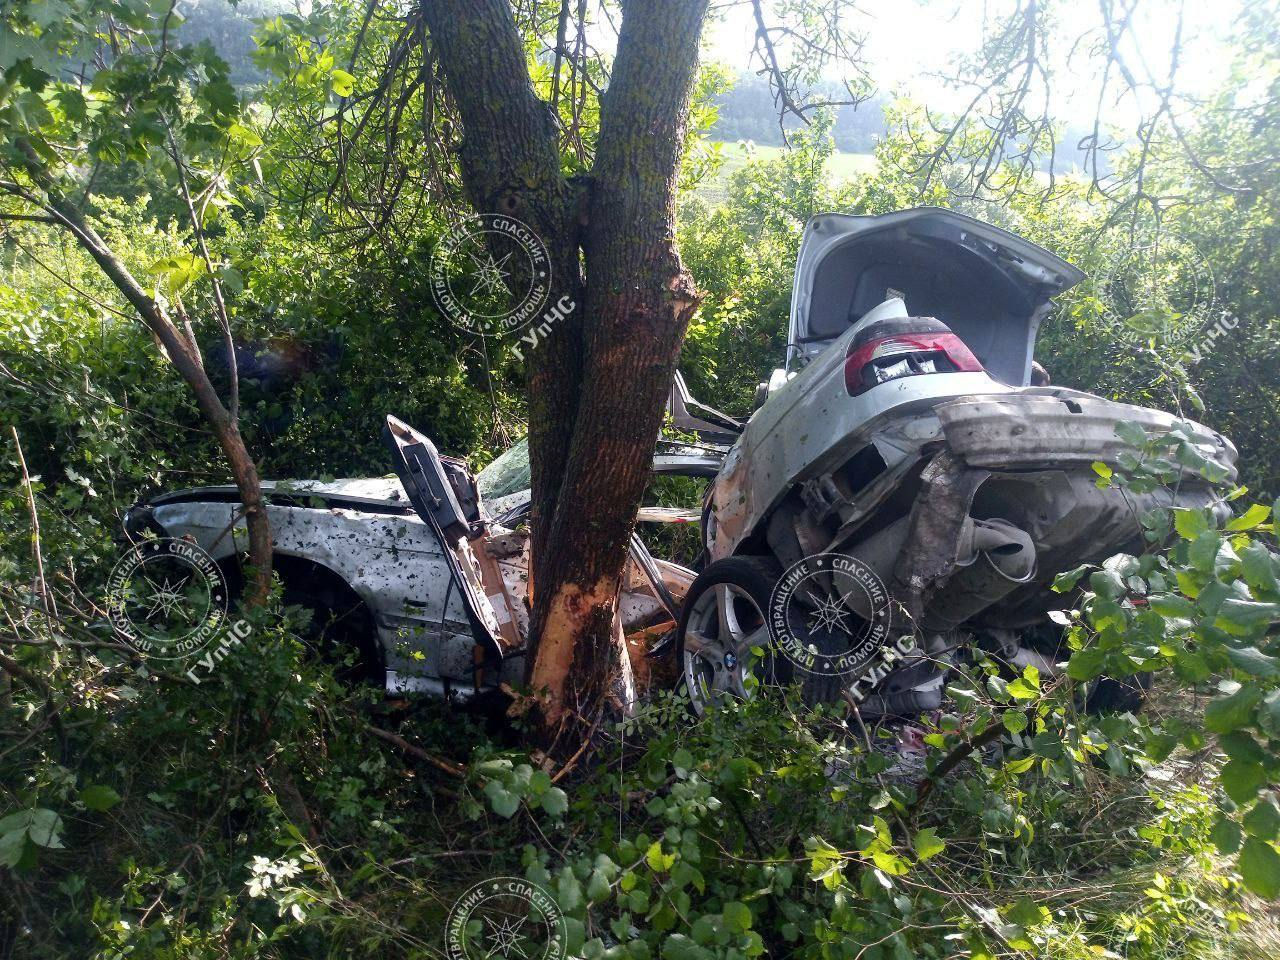 ДТП произошло на трассе Тирасполь - Каменка: водителя зажало в авто